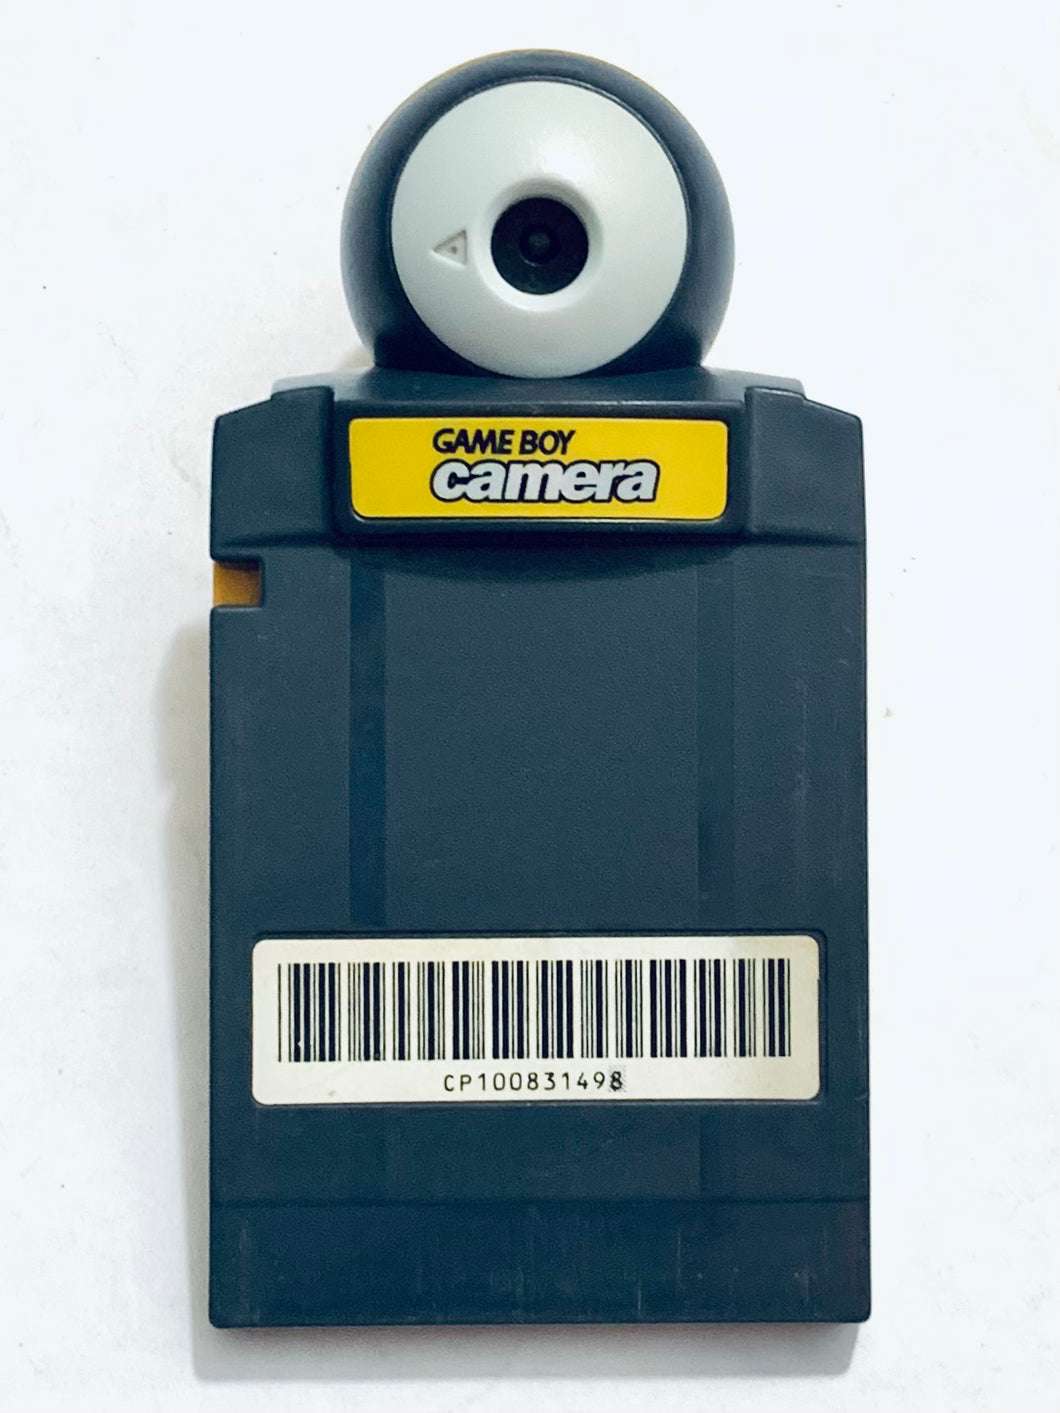 GameBoy Camara - Game Boy - Pocket - GBC - GBA (MGB-006)